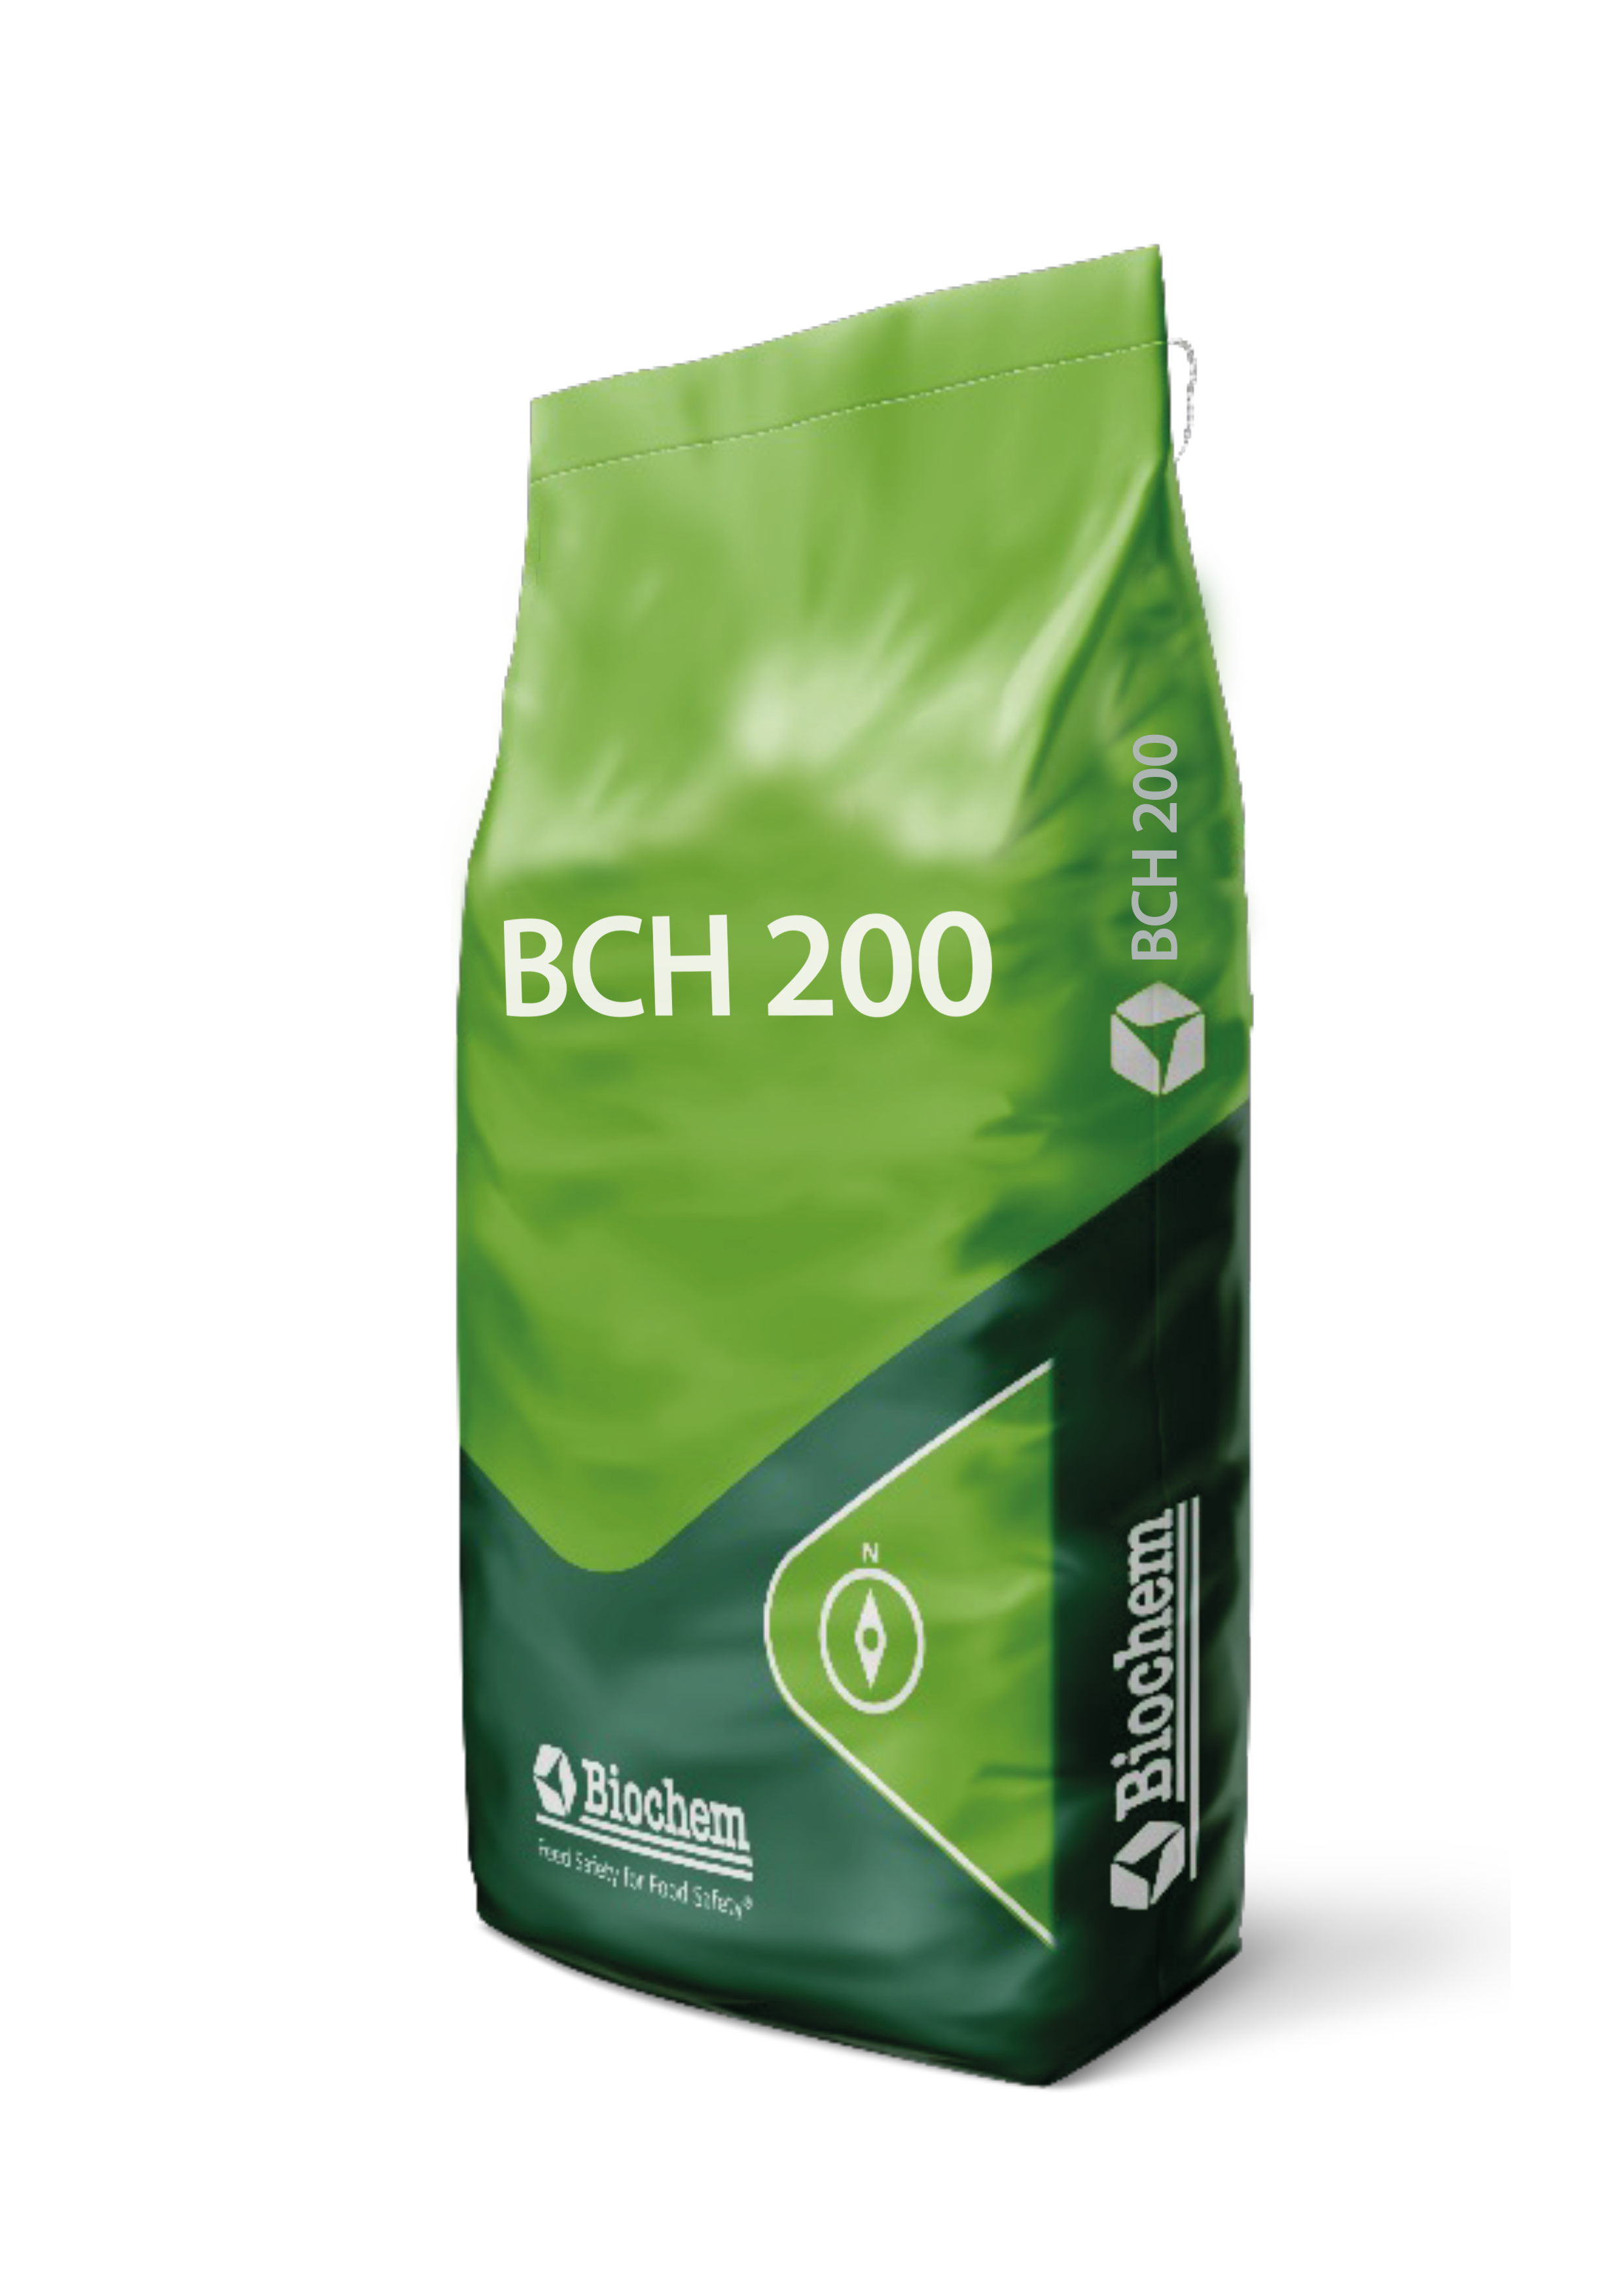 bch200 copia